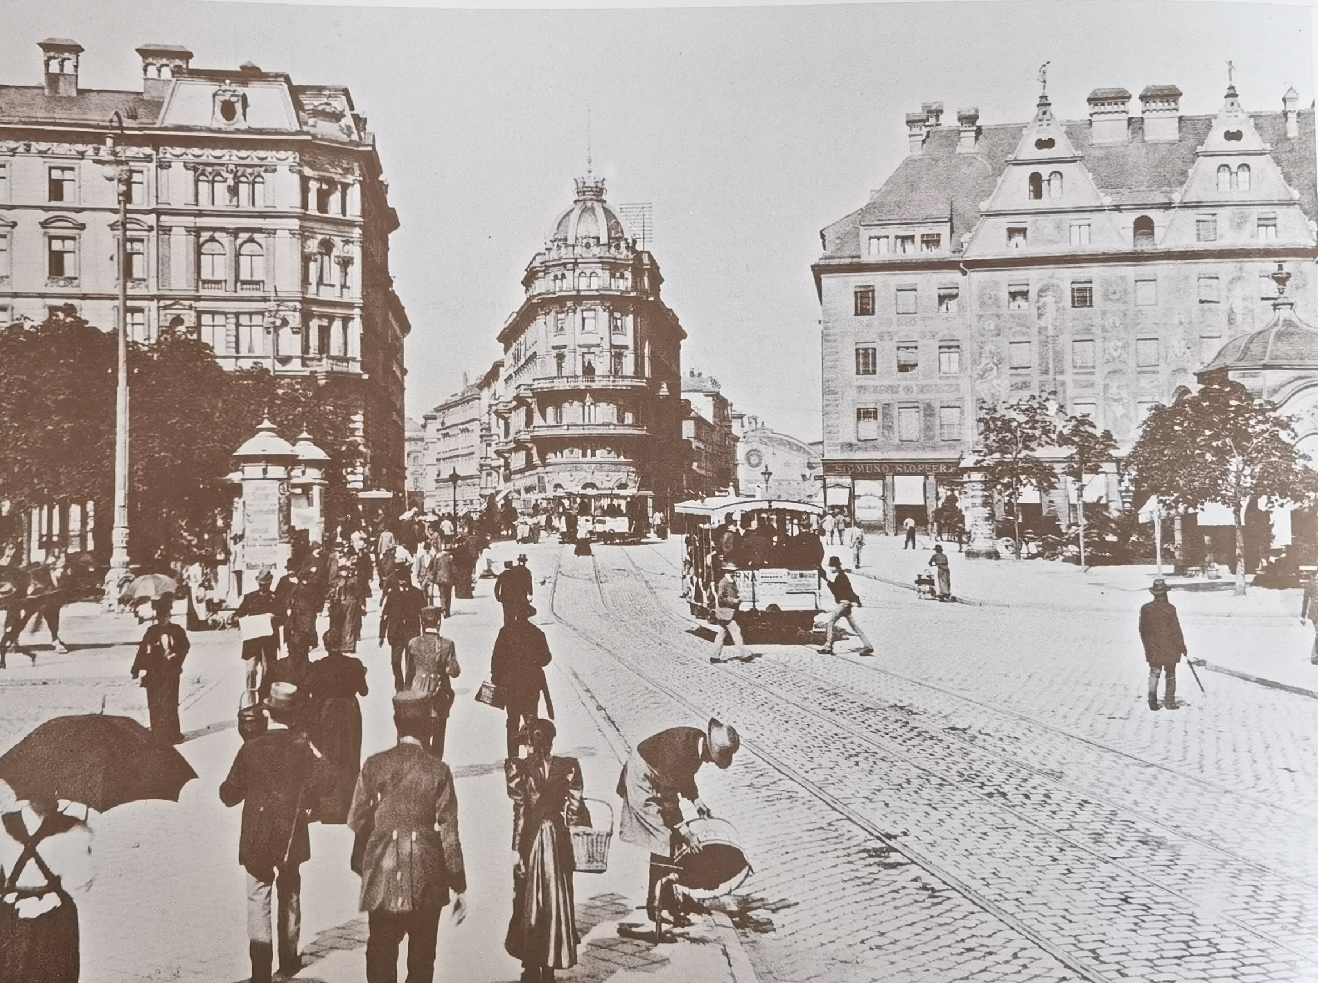 Φωτογραφία του 1893 που δείχνει αριστερά το τότε ξενοδοχείο "Stachus" (σημερινό Kaufhof) και δεξιά το ξενοδοχείο Bellevue(σημερινό Königshof) πηγή: Münchner Merkur